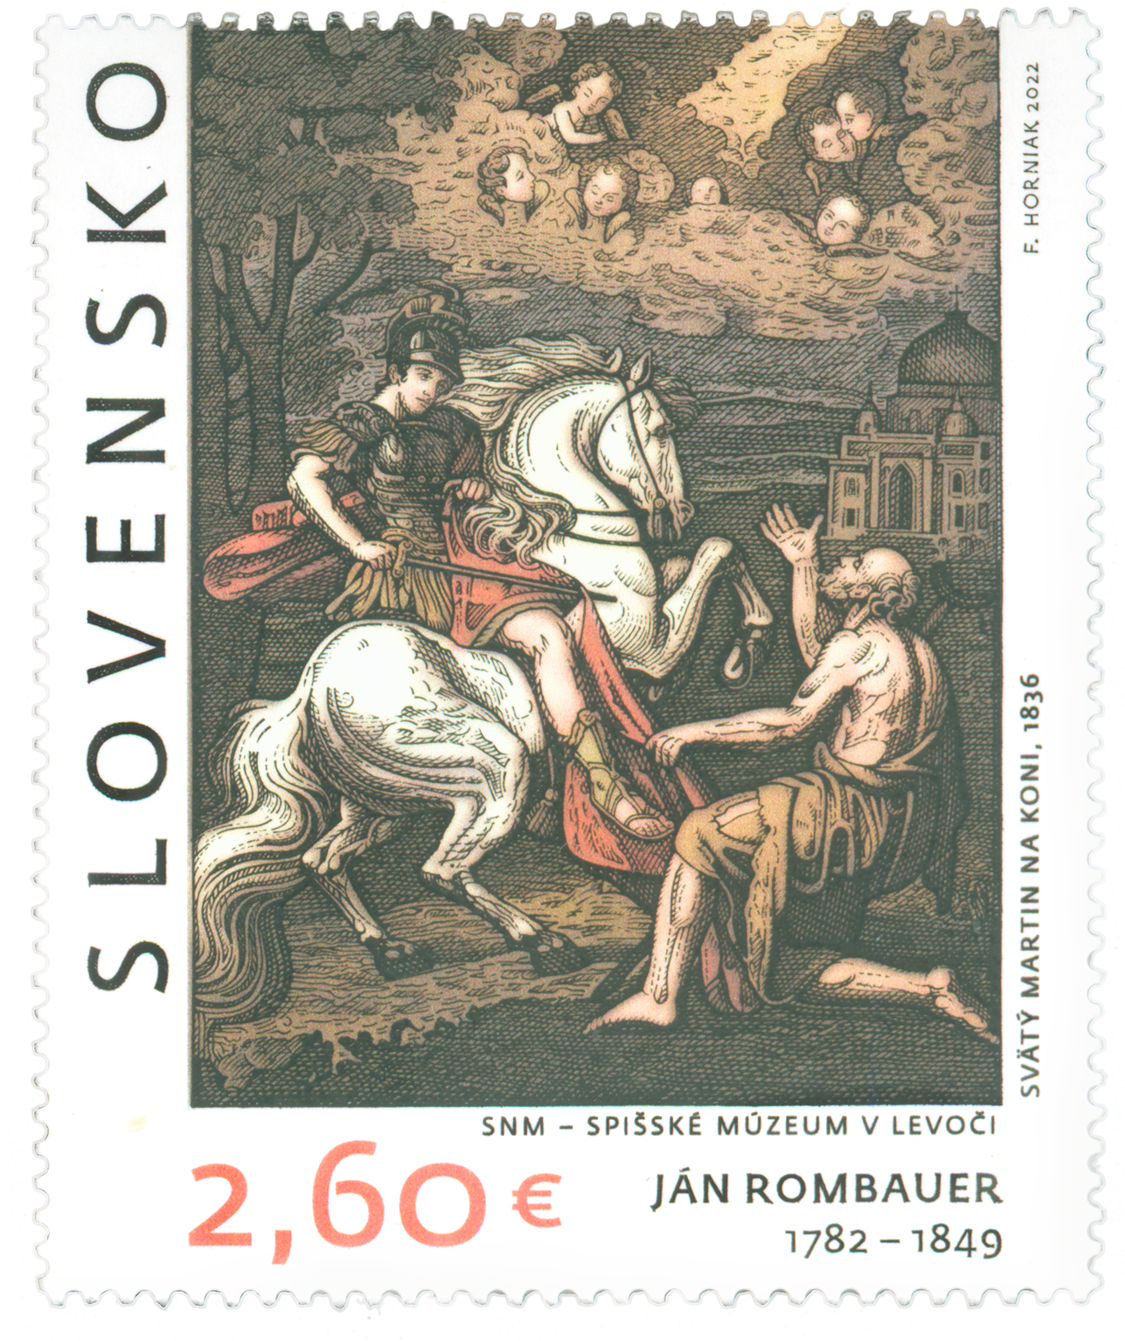 777 - ART: Ján Rombauer (1782 – 1849)